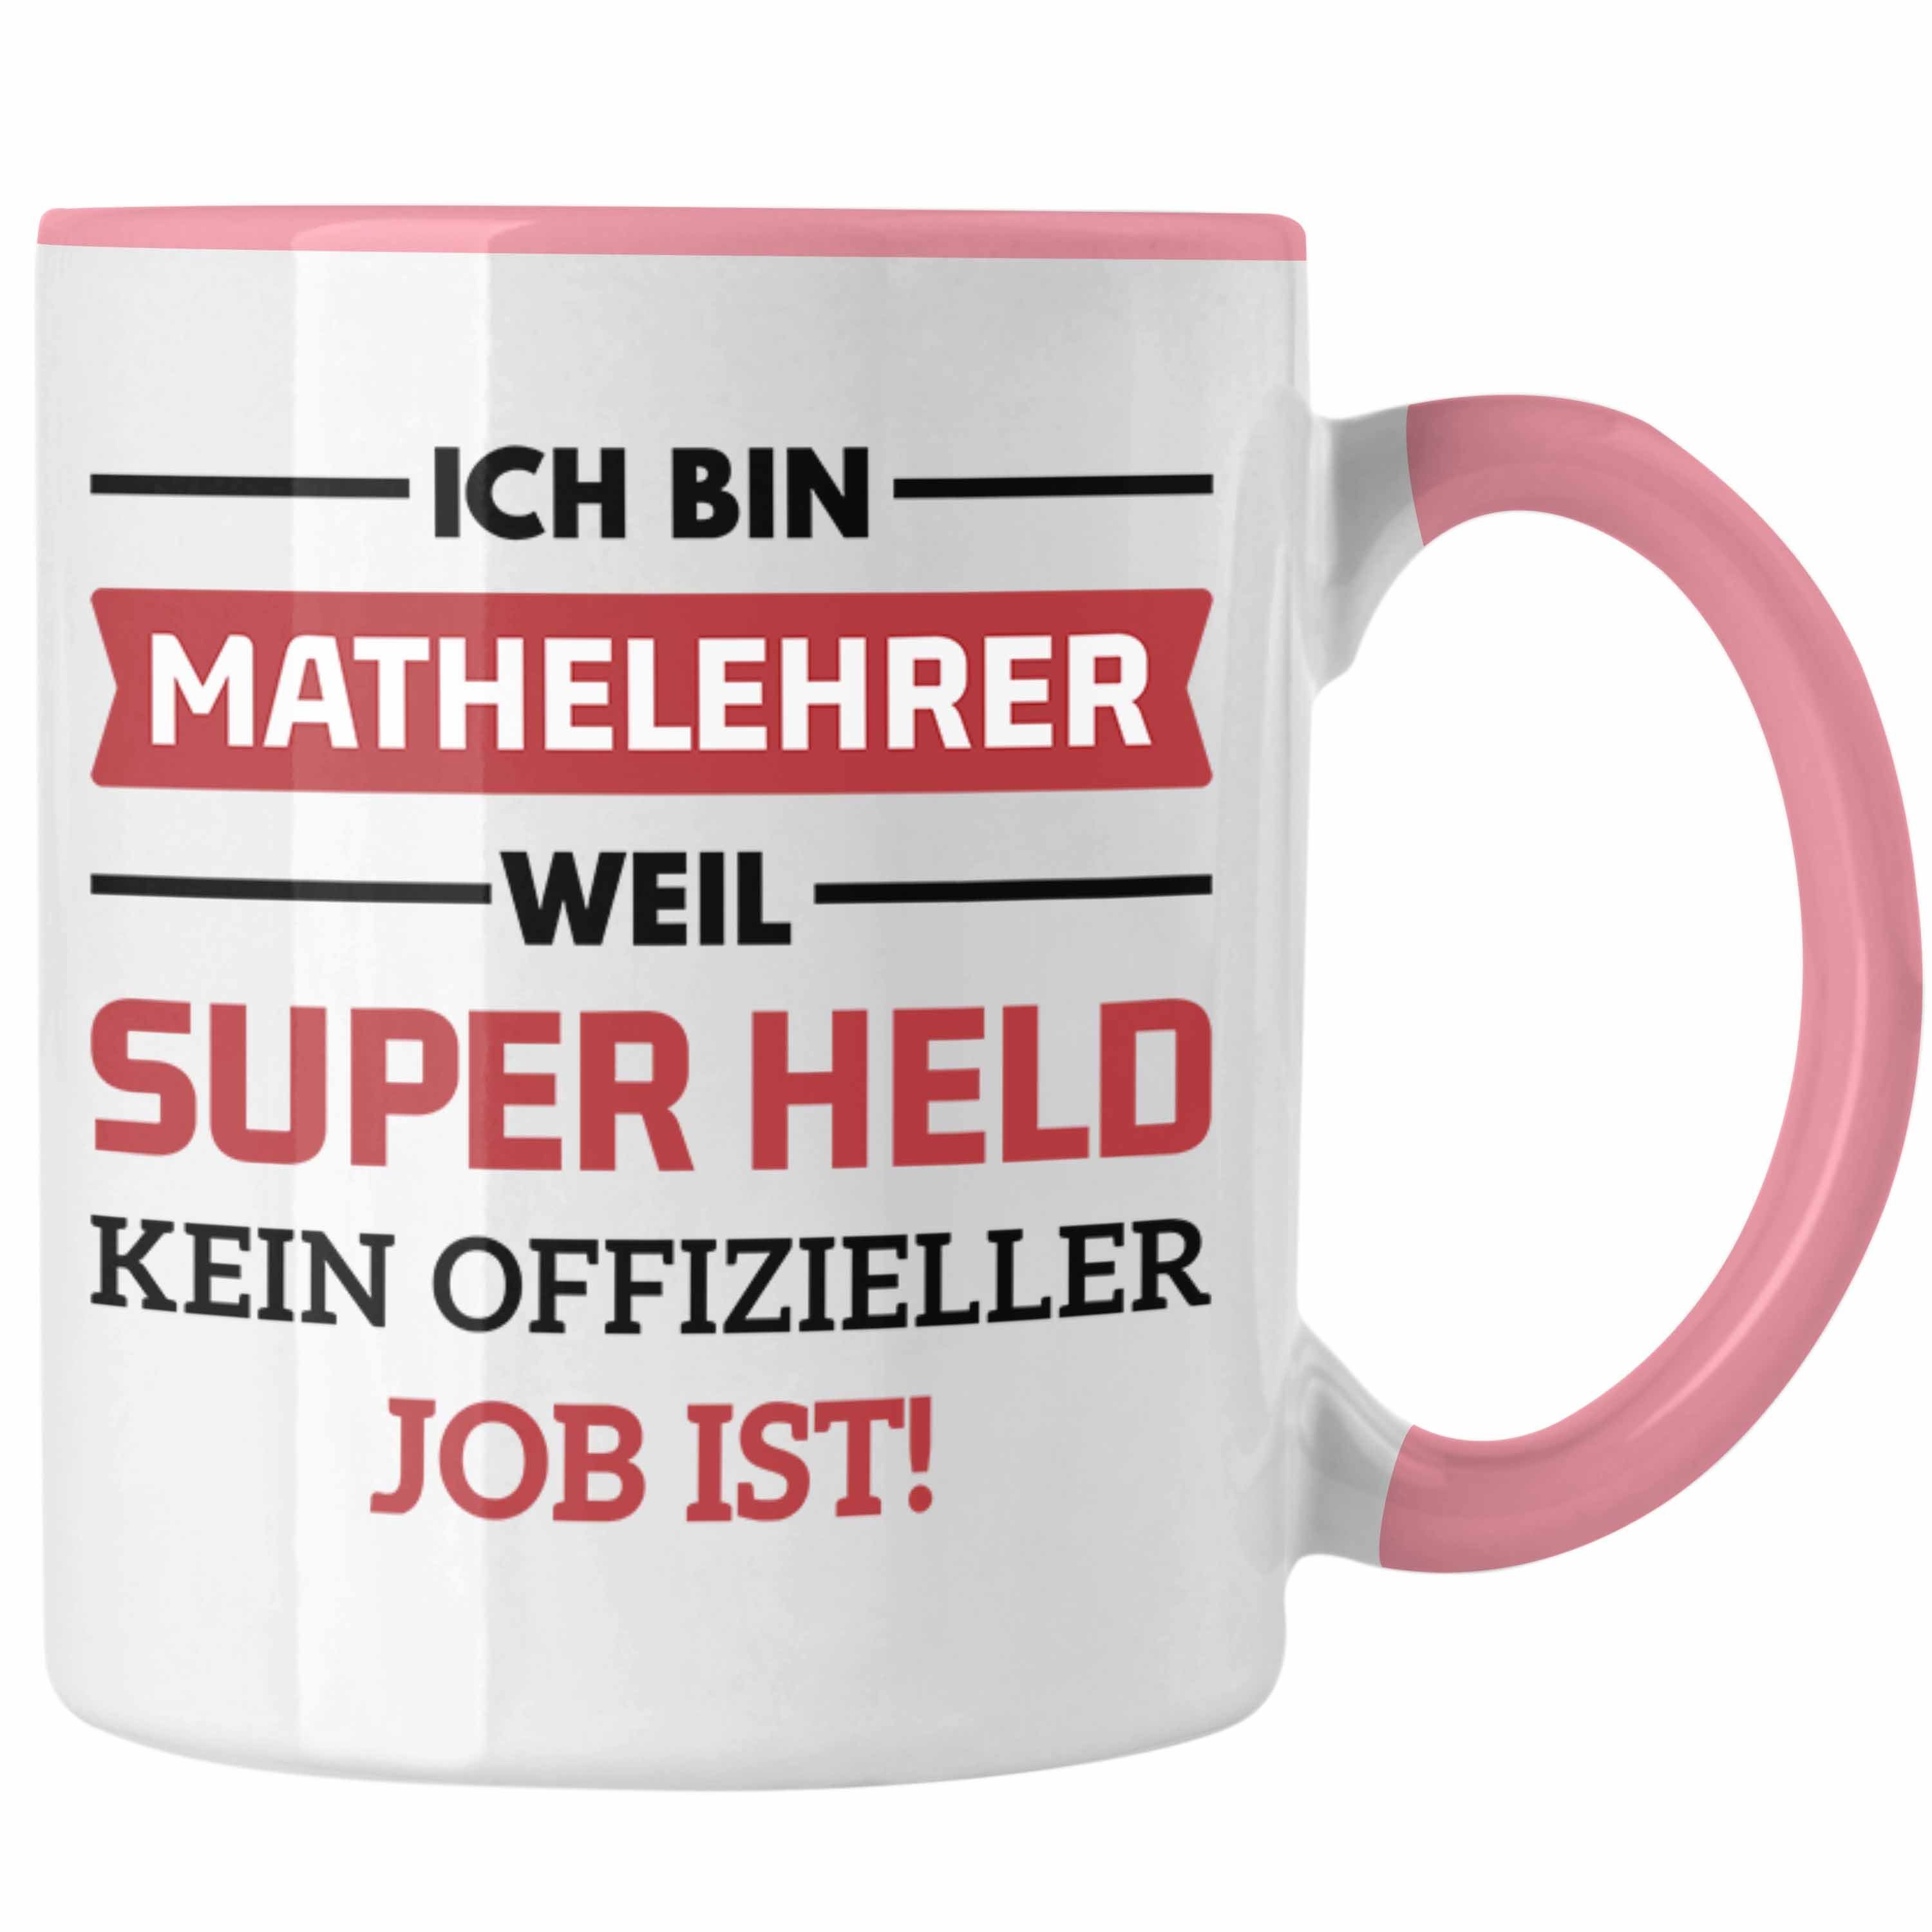 Trendation Tasse Trendation - Mathelehrer Tasse Mathematiker Tassen mit Spruch Lustig Kaffeetasse Geschenk Superheld Rosa